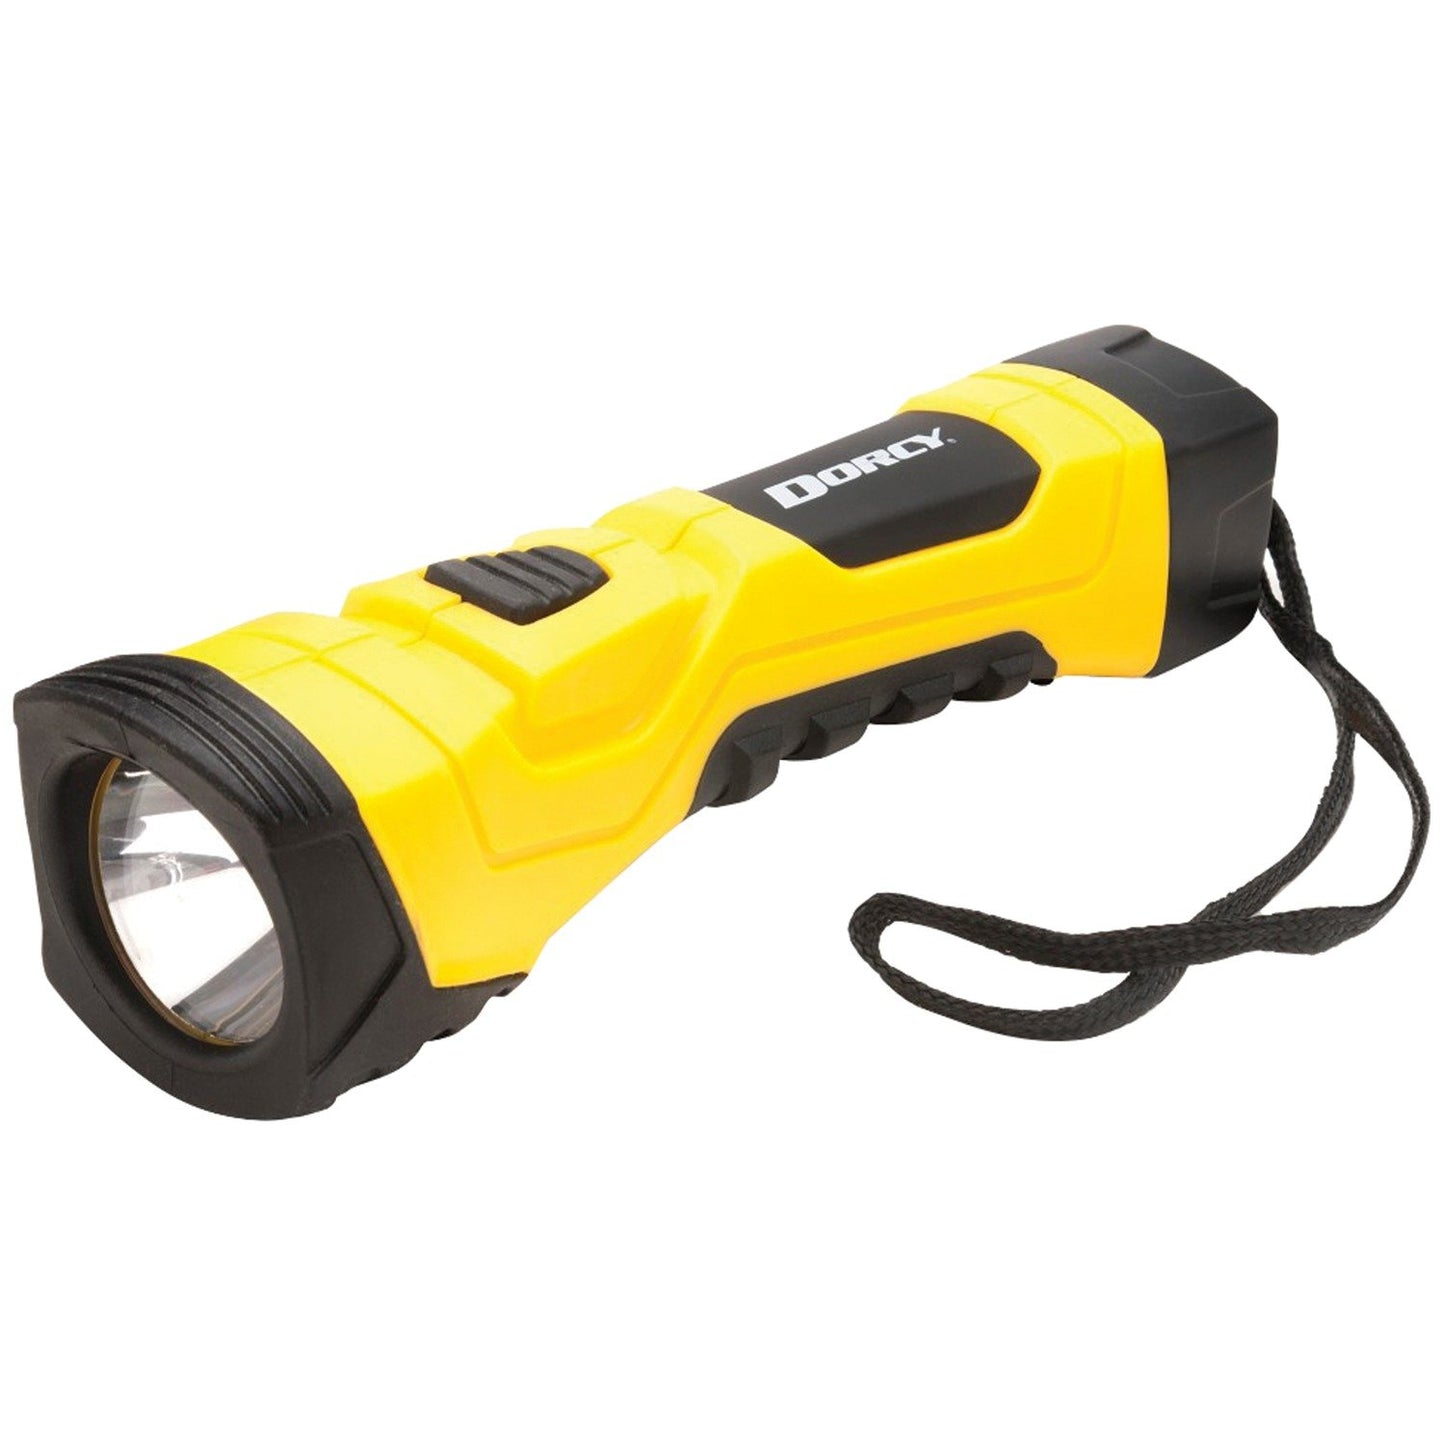 DORCY 41-4750 LED Flashlight (190 Lumen)